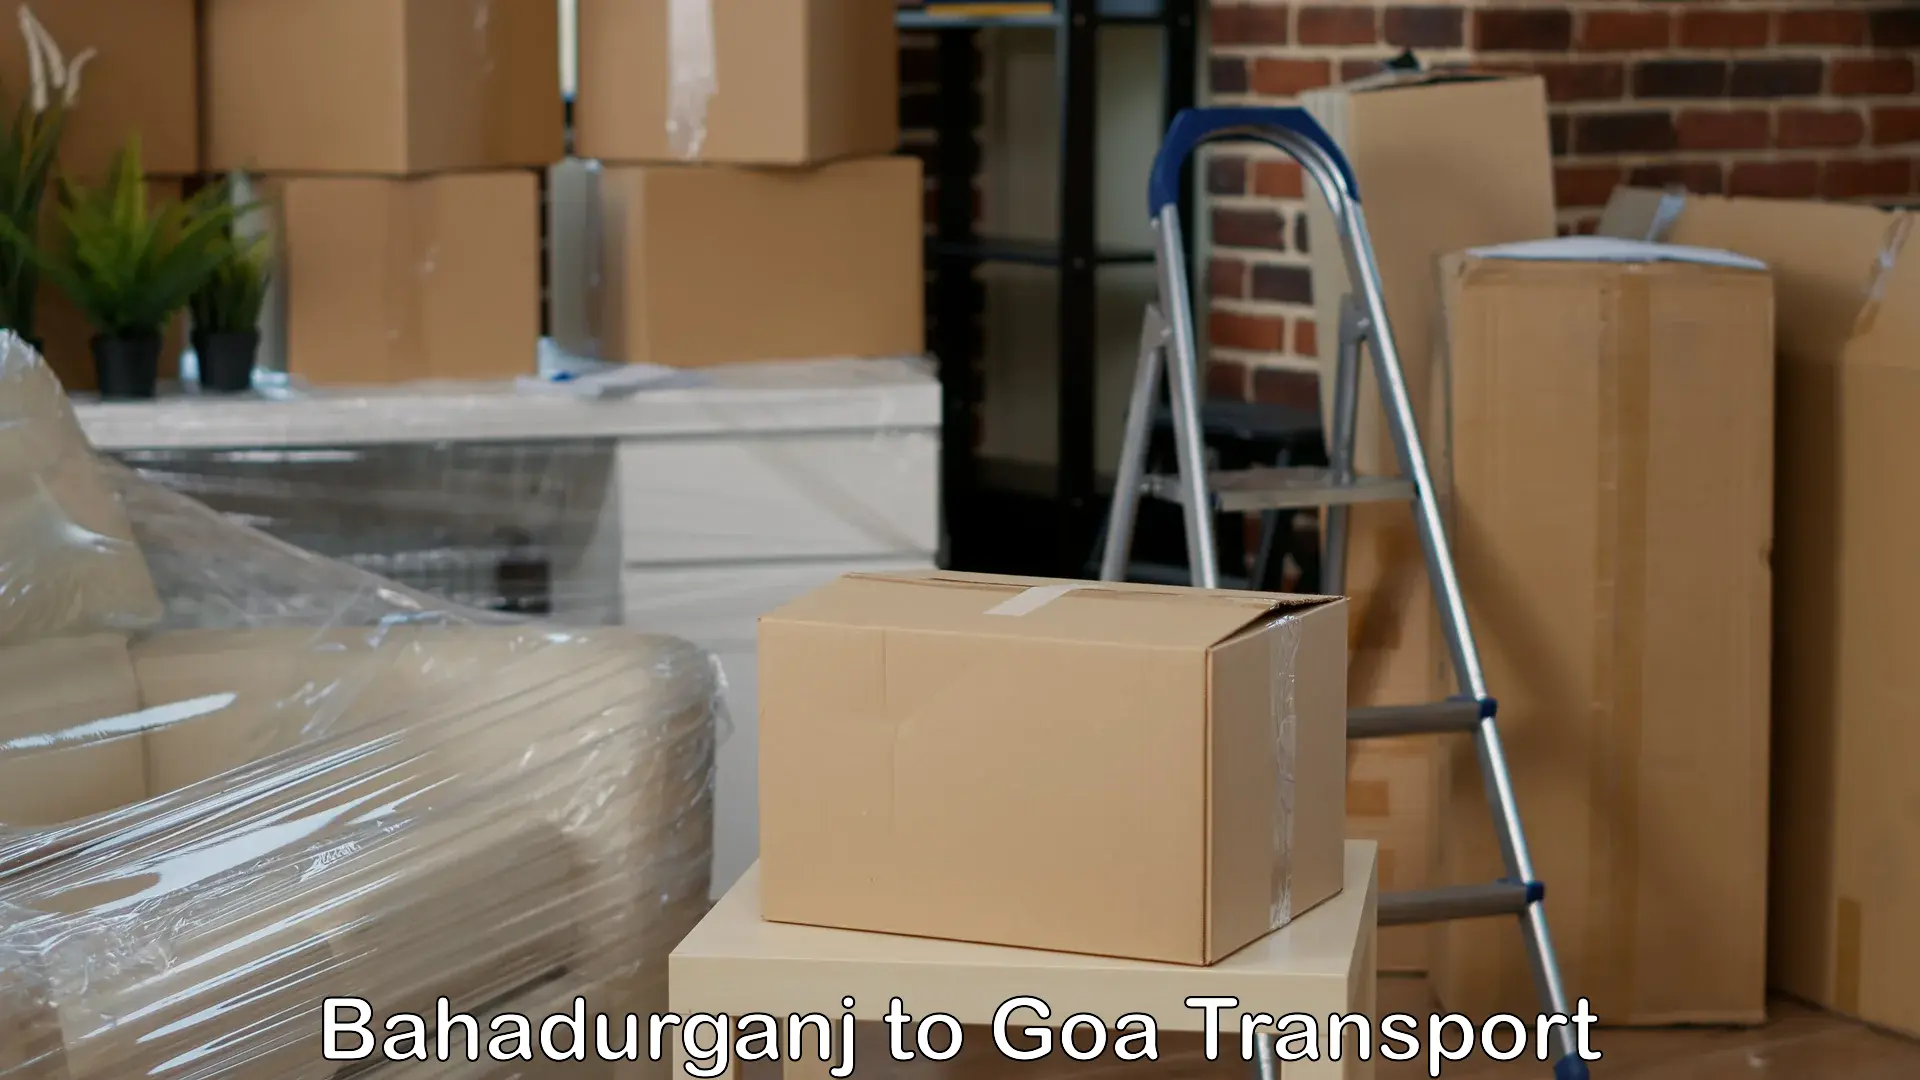 Door to door transport services Bahadurganj to Goa University